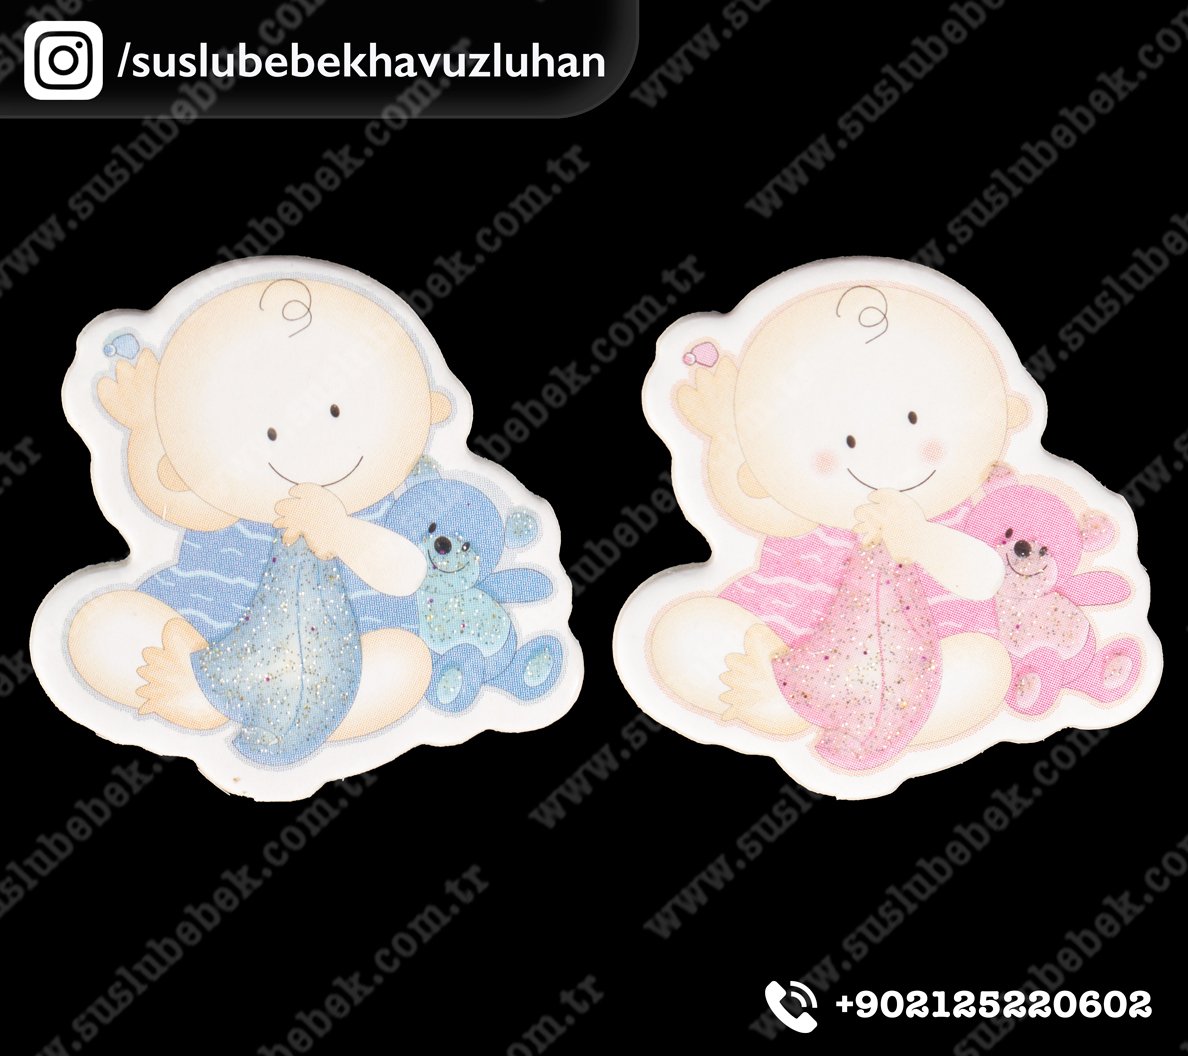 Büyük Mendilli Ayıcıklı Bebek Sticker 12'Lİ Paket